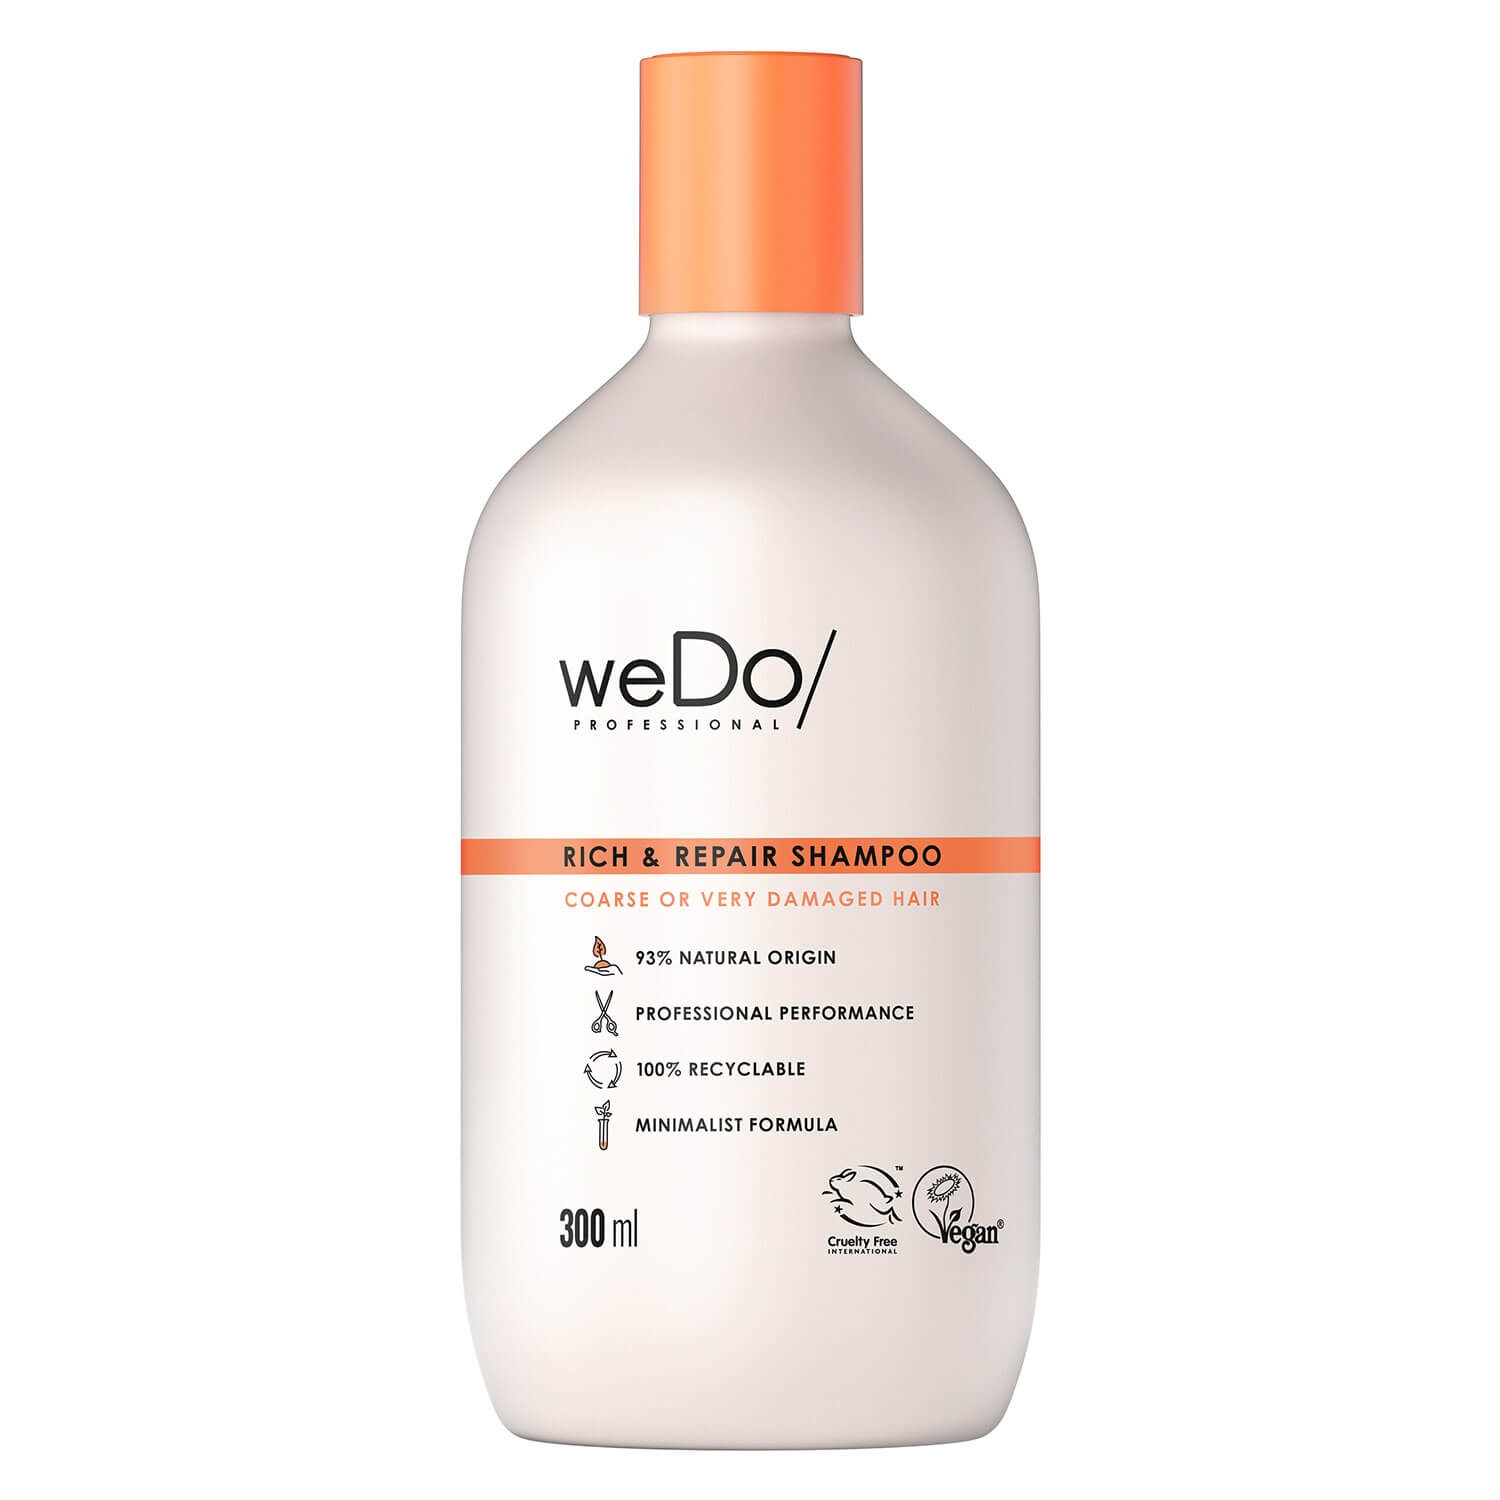 Produktbild von weDo/ - Rich & Repair Shampoo